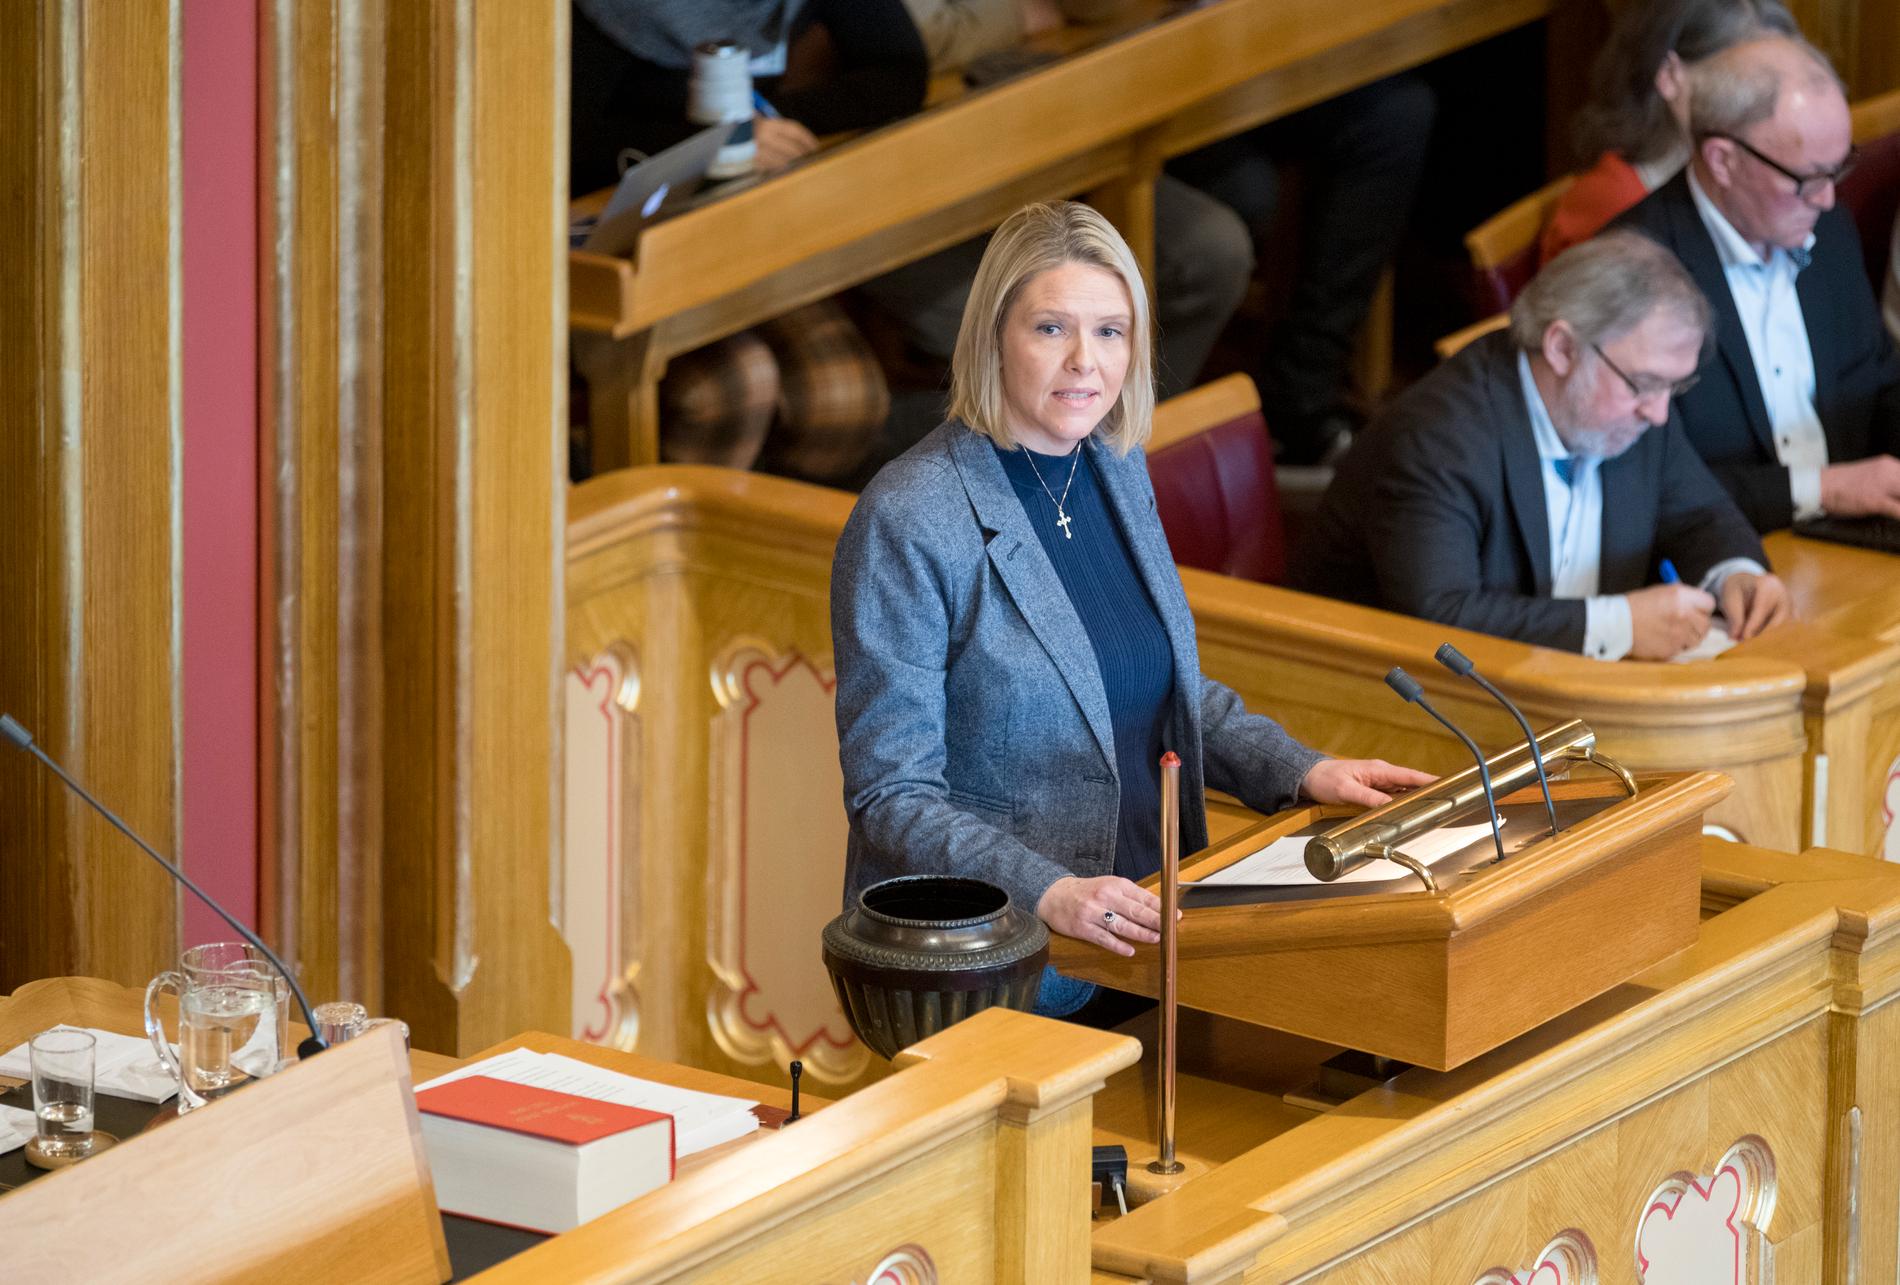 BEKLAGET – TIL SLUTT: Justisminister Sylvi Listhaug (Frp) ga en beklagelse etter flere timers debatt i Stortinget torsdag. Hun fikk hard kritikk fra stortingsflertallet, og fortsatt kan det bli flertall for et mistillitsforslag mot henne.